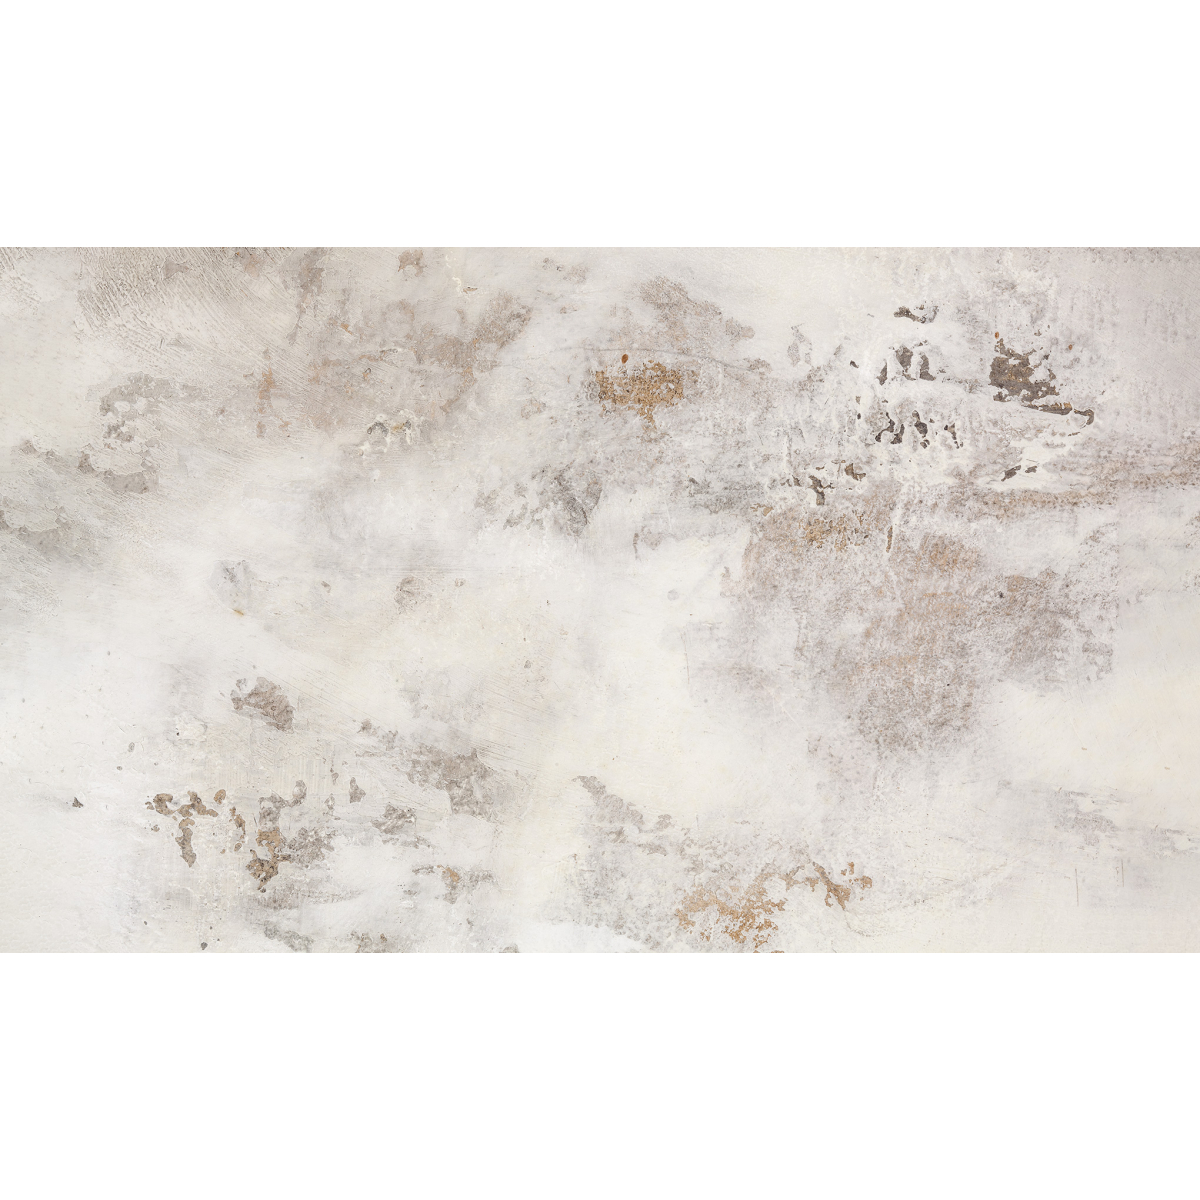 Custom panoramic wallpaper | Surface 1662 Acte-Deco